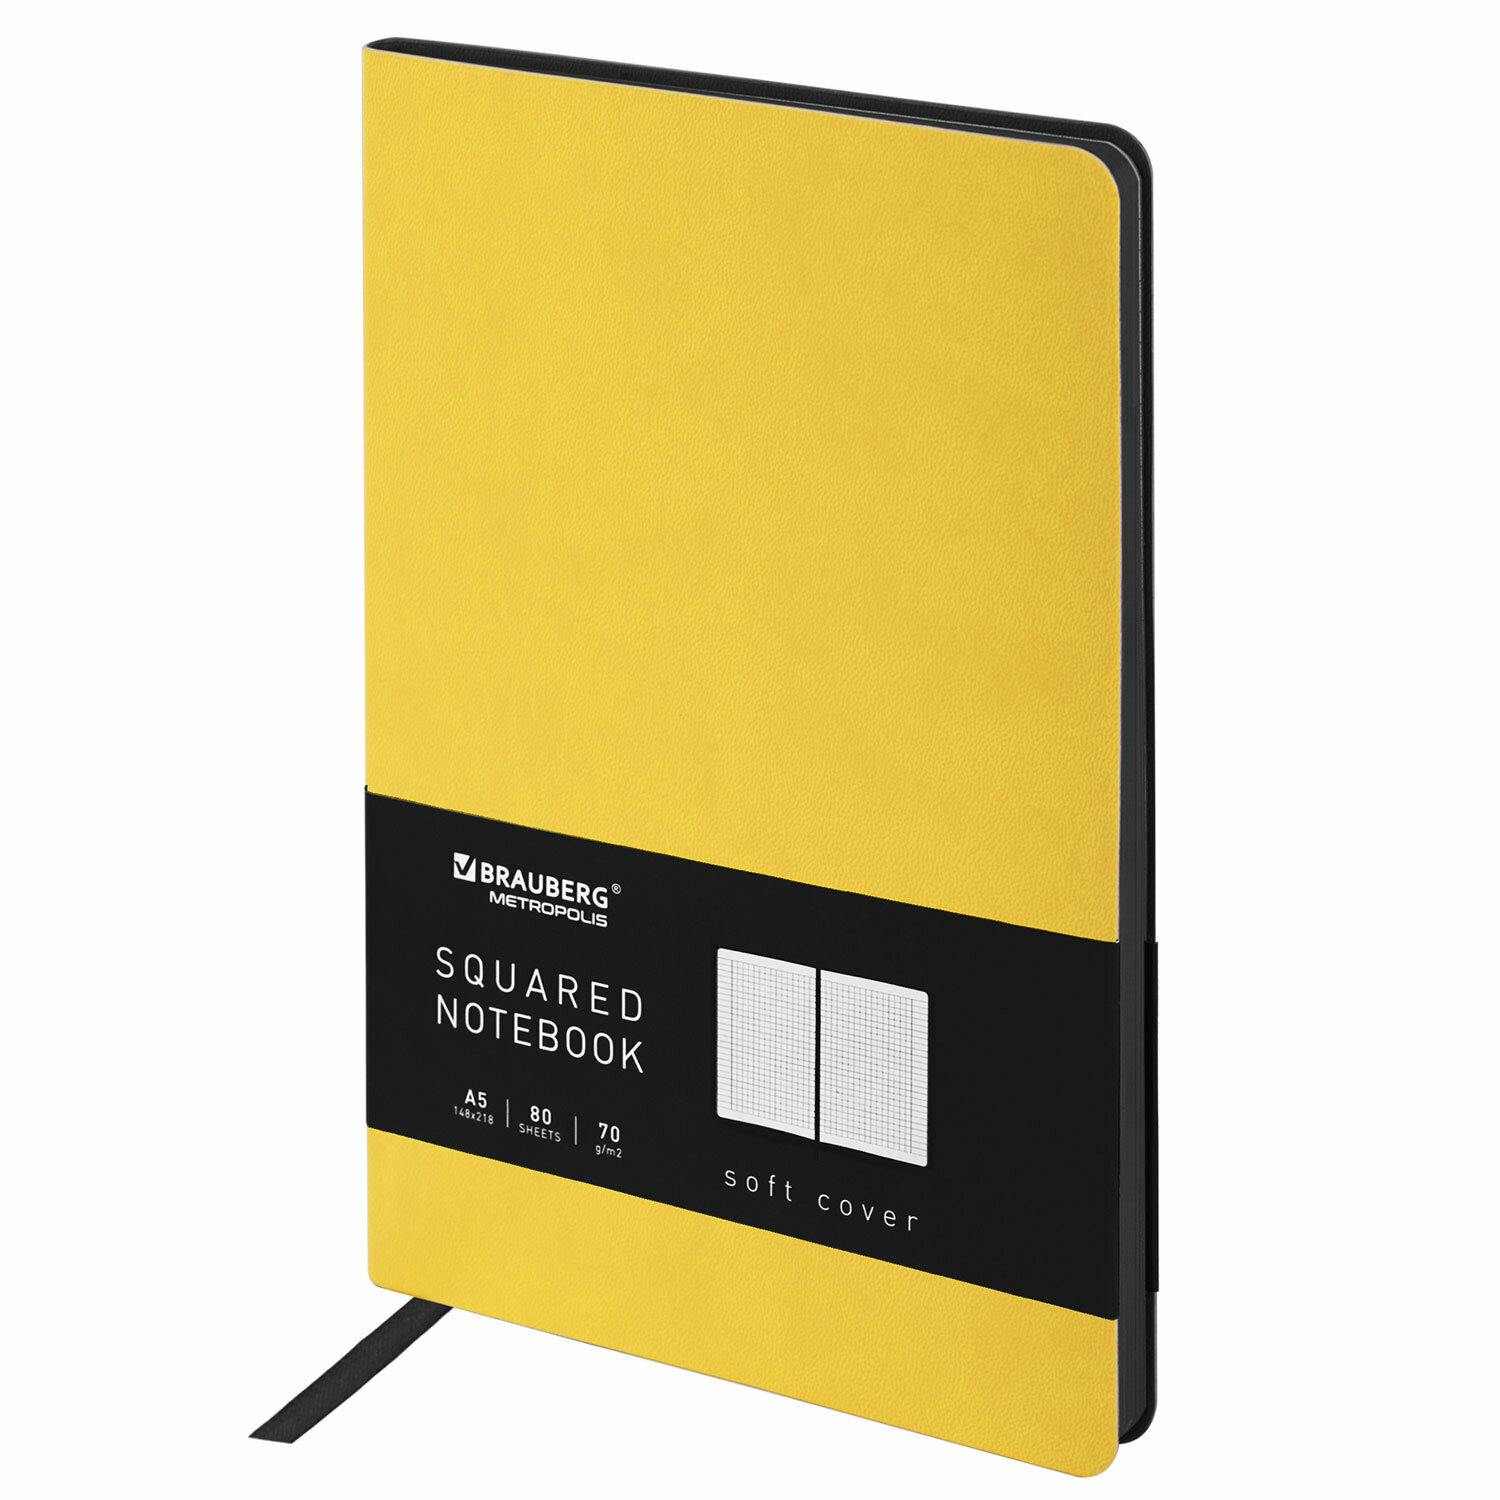 Бизнес-блокнот, записная книжка, тетрадь А5 (148x218 мм), Brauberg Metropolis Mix, под кожу, 80 л, клетка, желтый, 111038